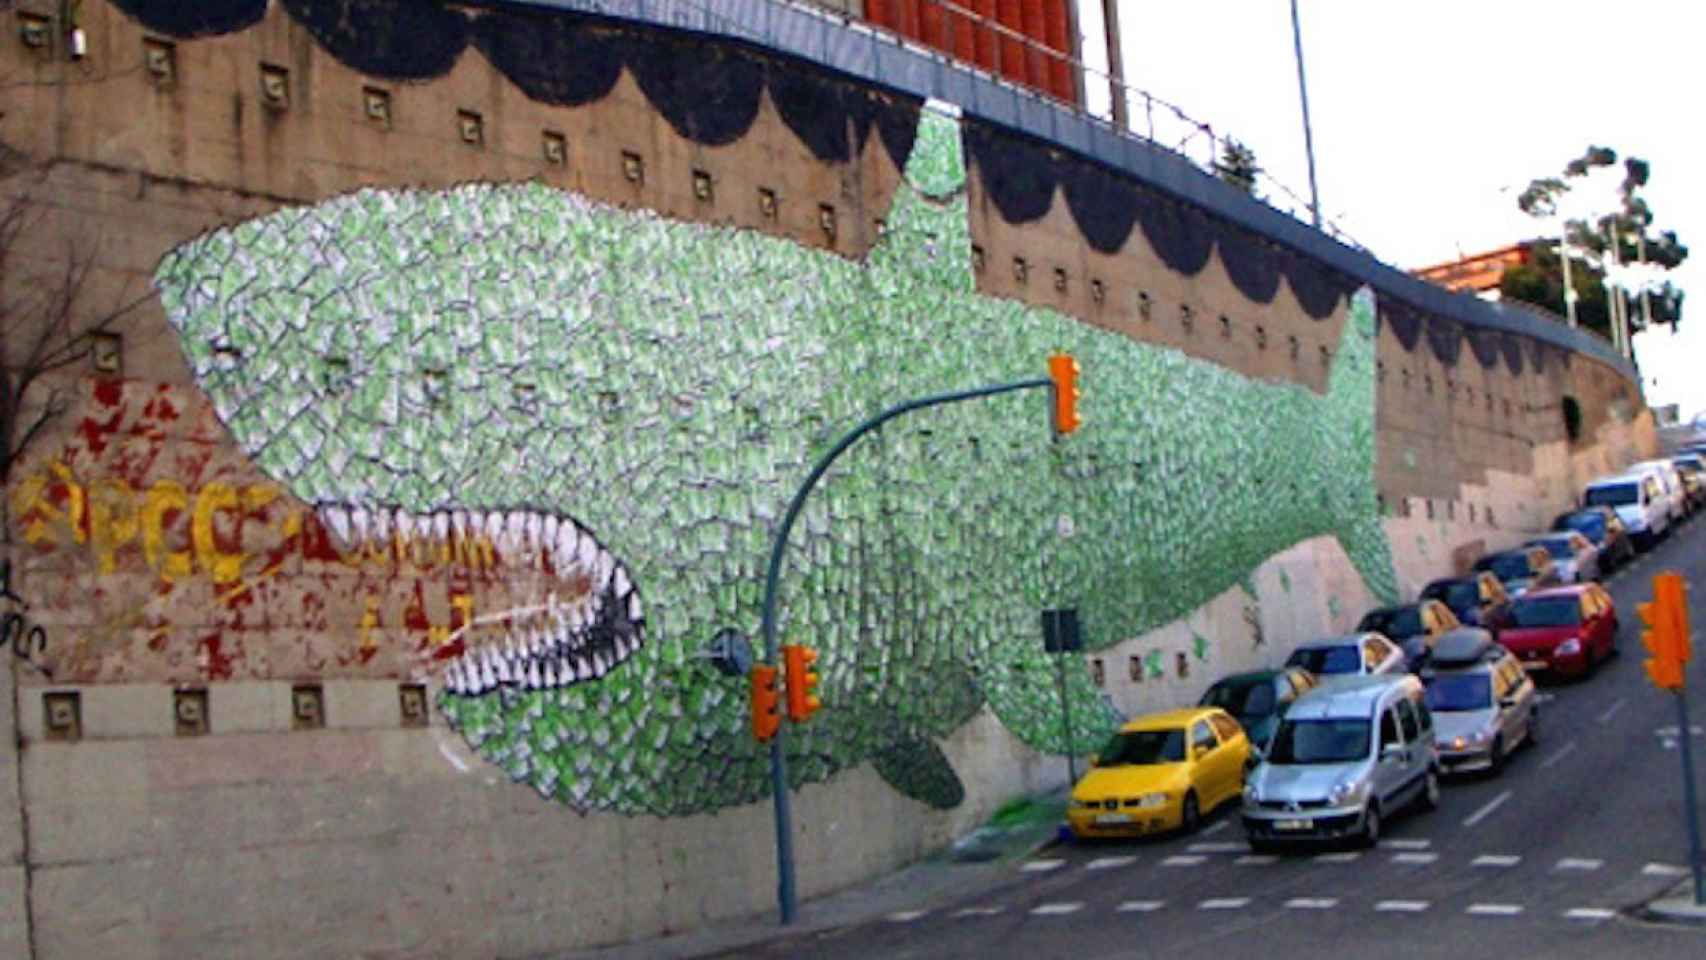 Mural del tiburón en el barrio del Carmel / @LlibertariesZN